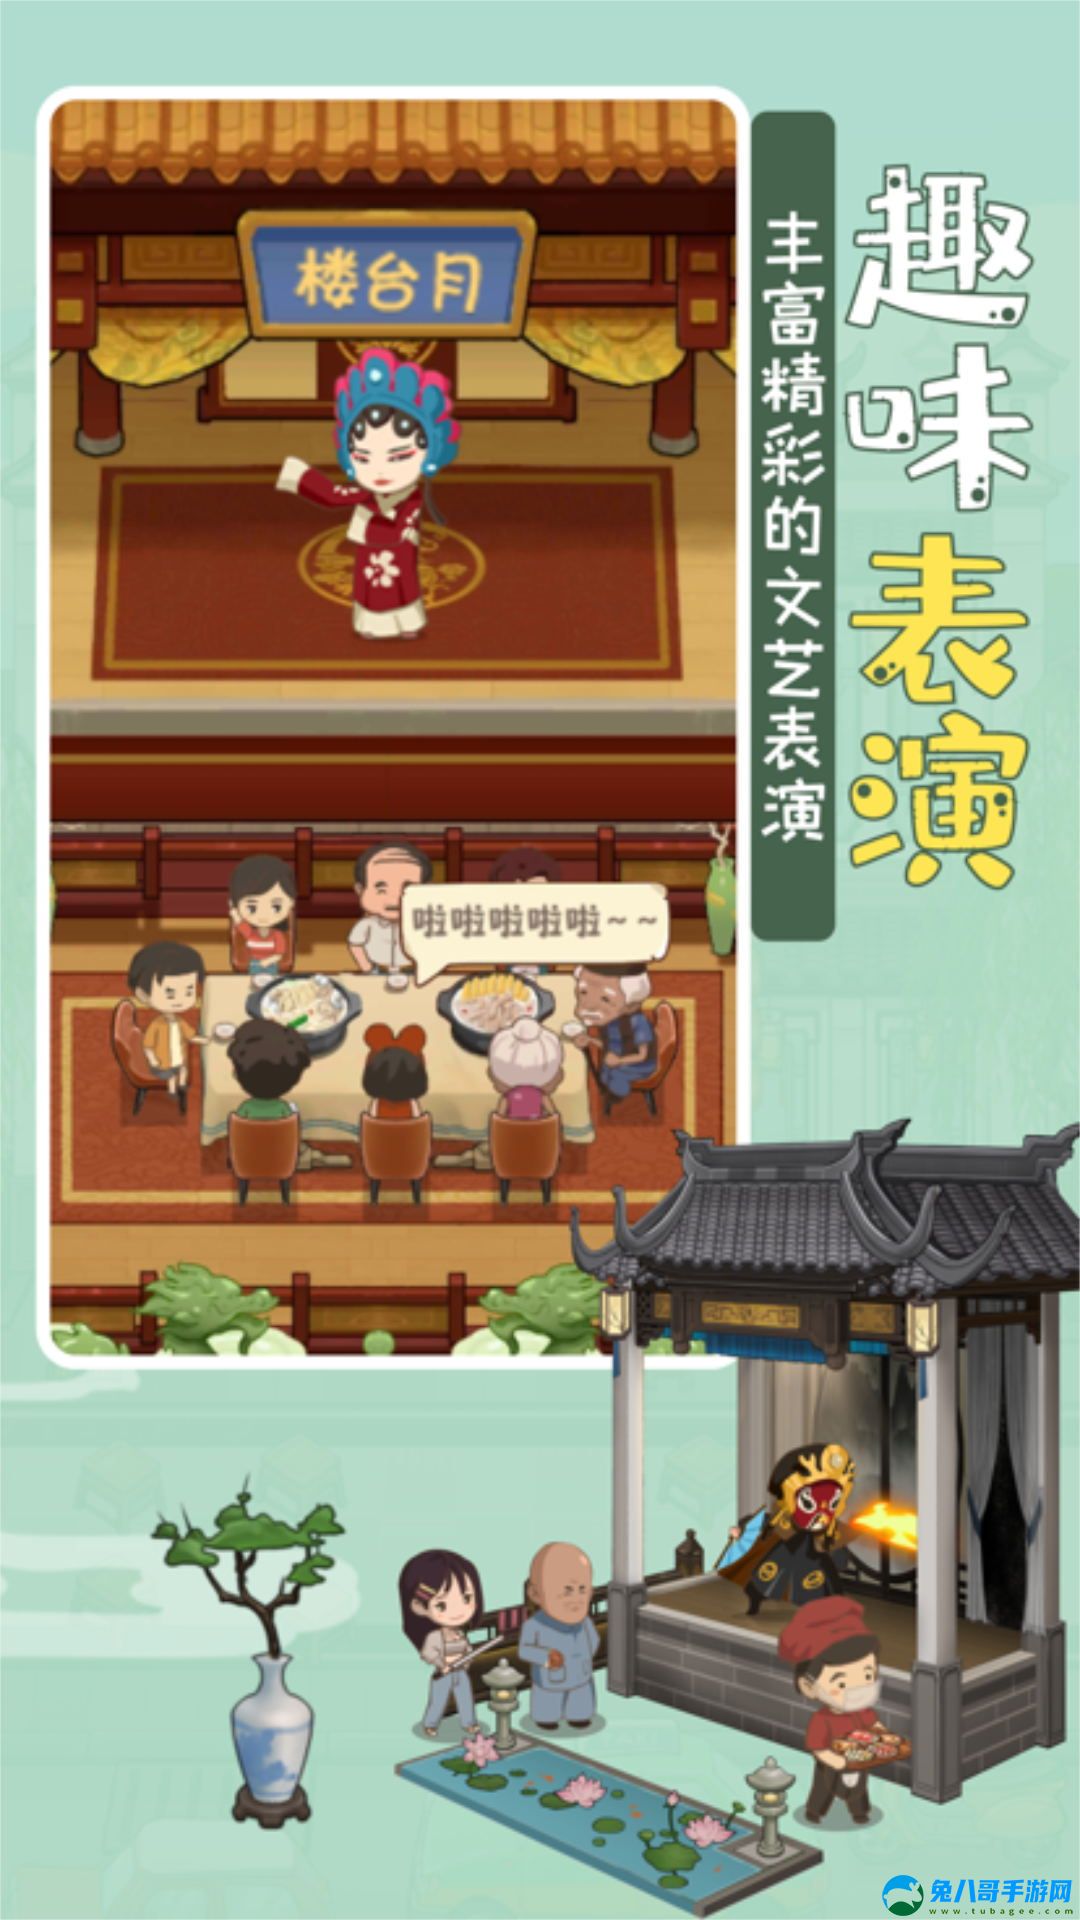 模拟中餐馆游戏安卓版 v1.0.5